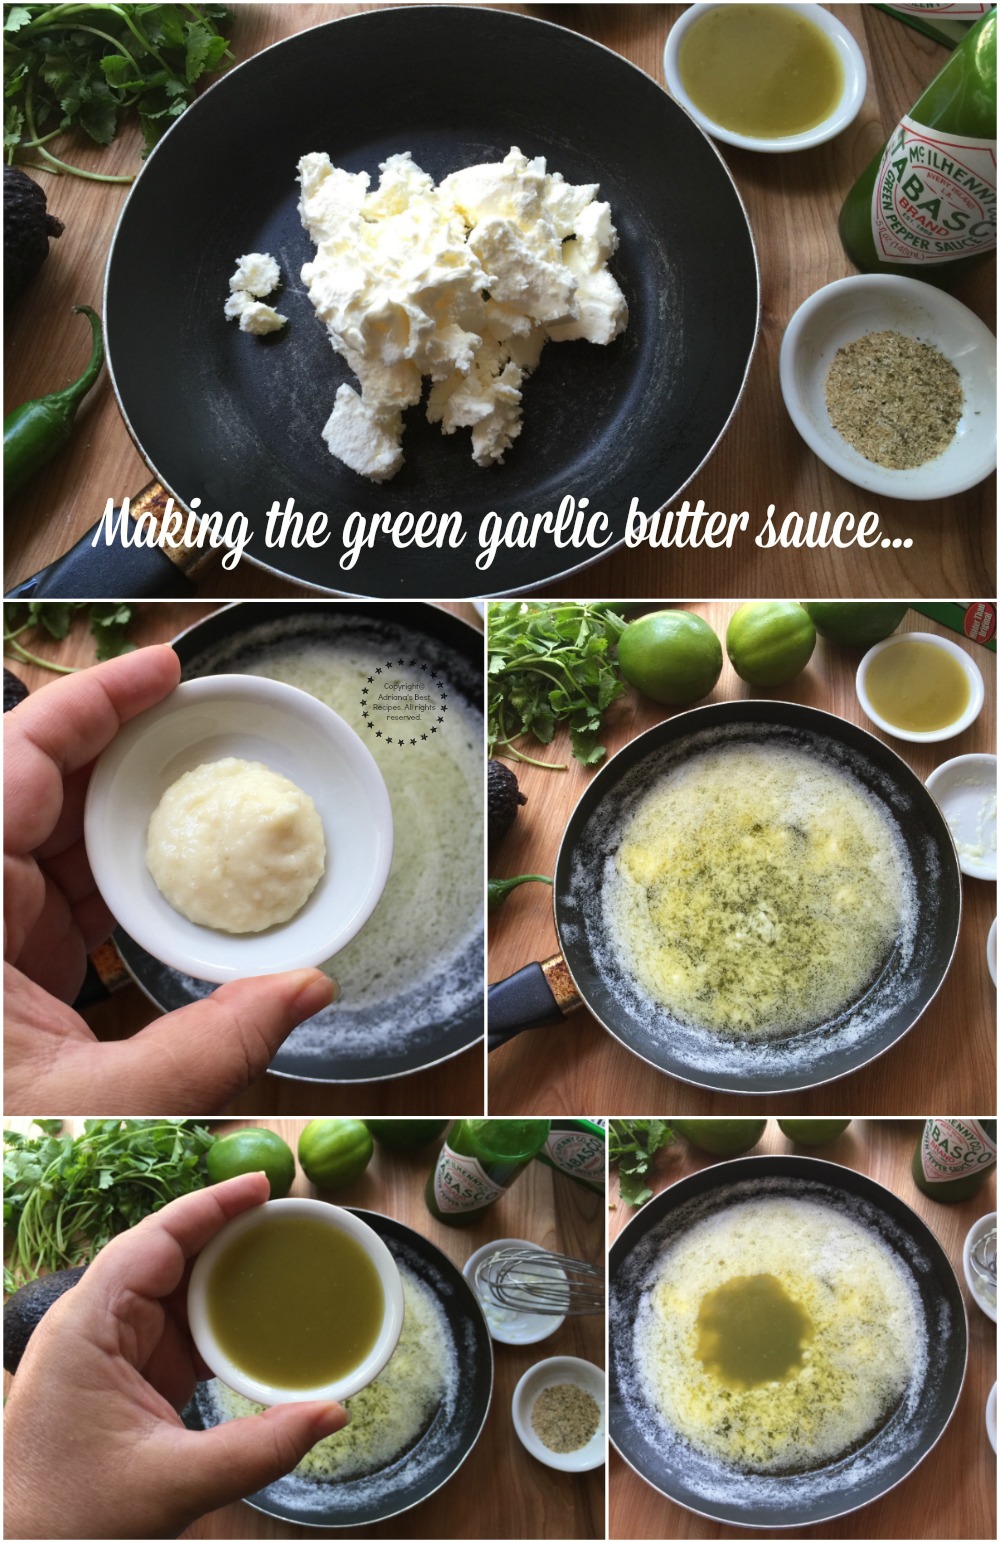 Haciendo la salsa verde con mantequilla y ajo